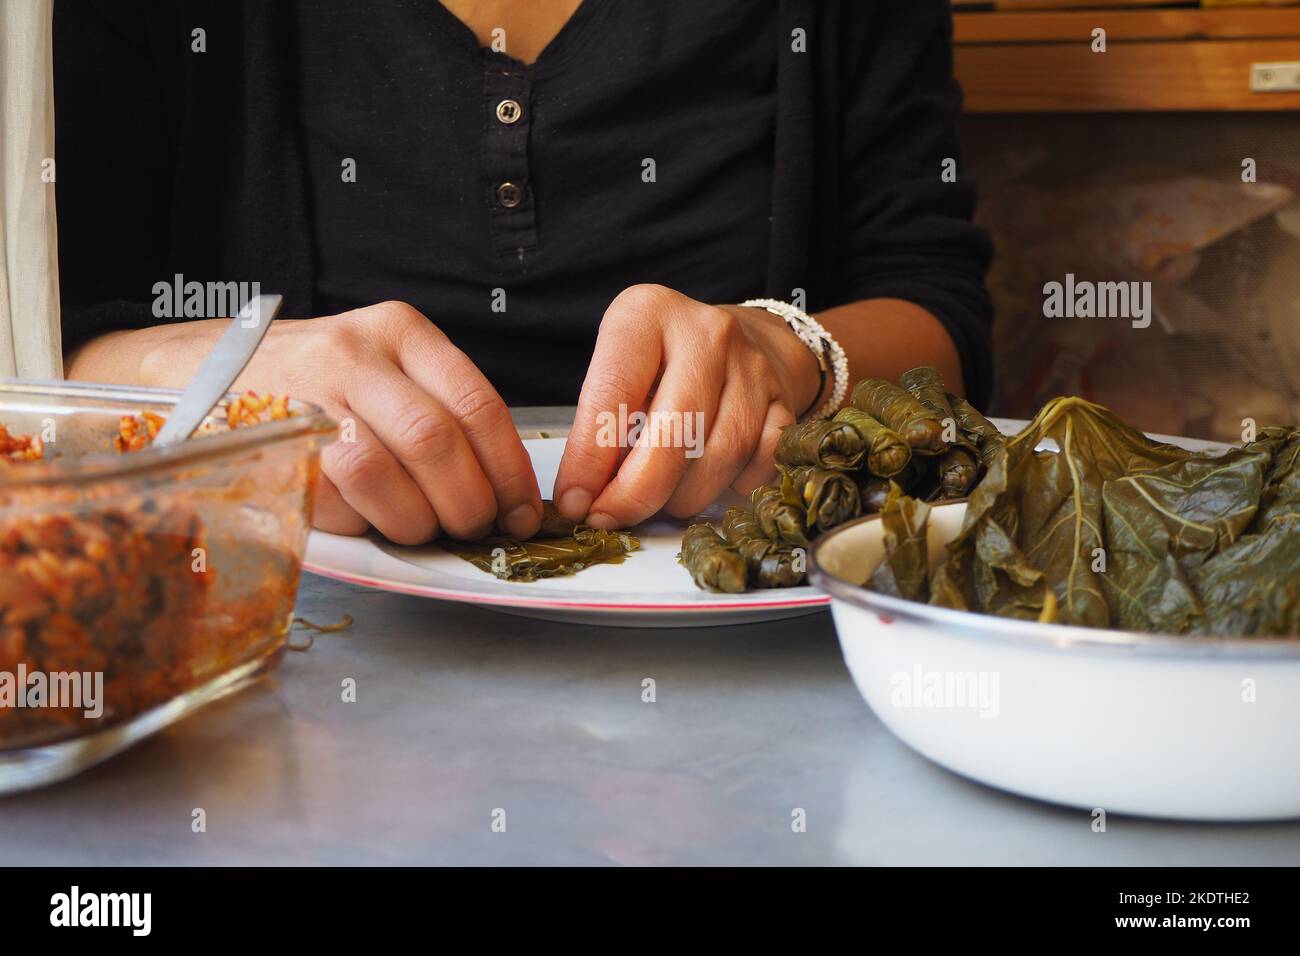 Traubenblätter gefüllt mit Reis und Kräutern.Frau Vorbereitung verpackte Blatt. Gefüllte Traubenblätter bereit zum Kochen. Türkische traditionelle Küche, Yaprak Sarma. Stockfoto